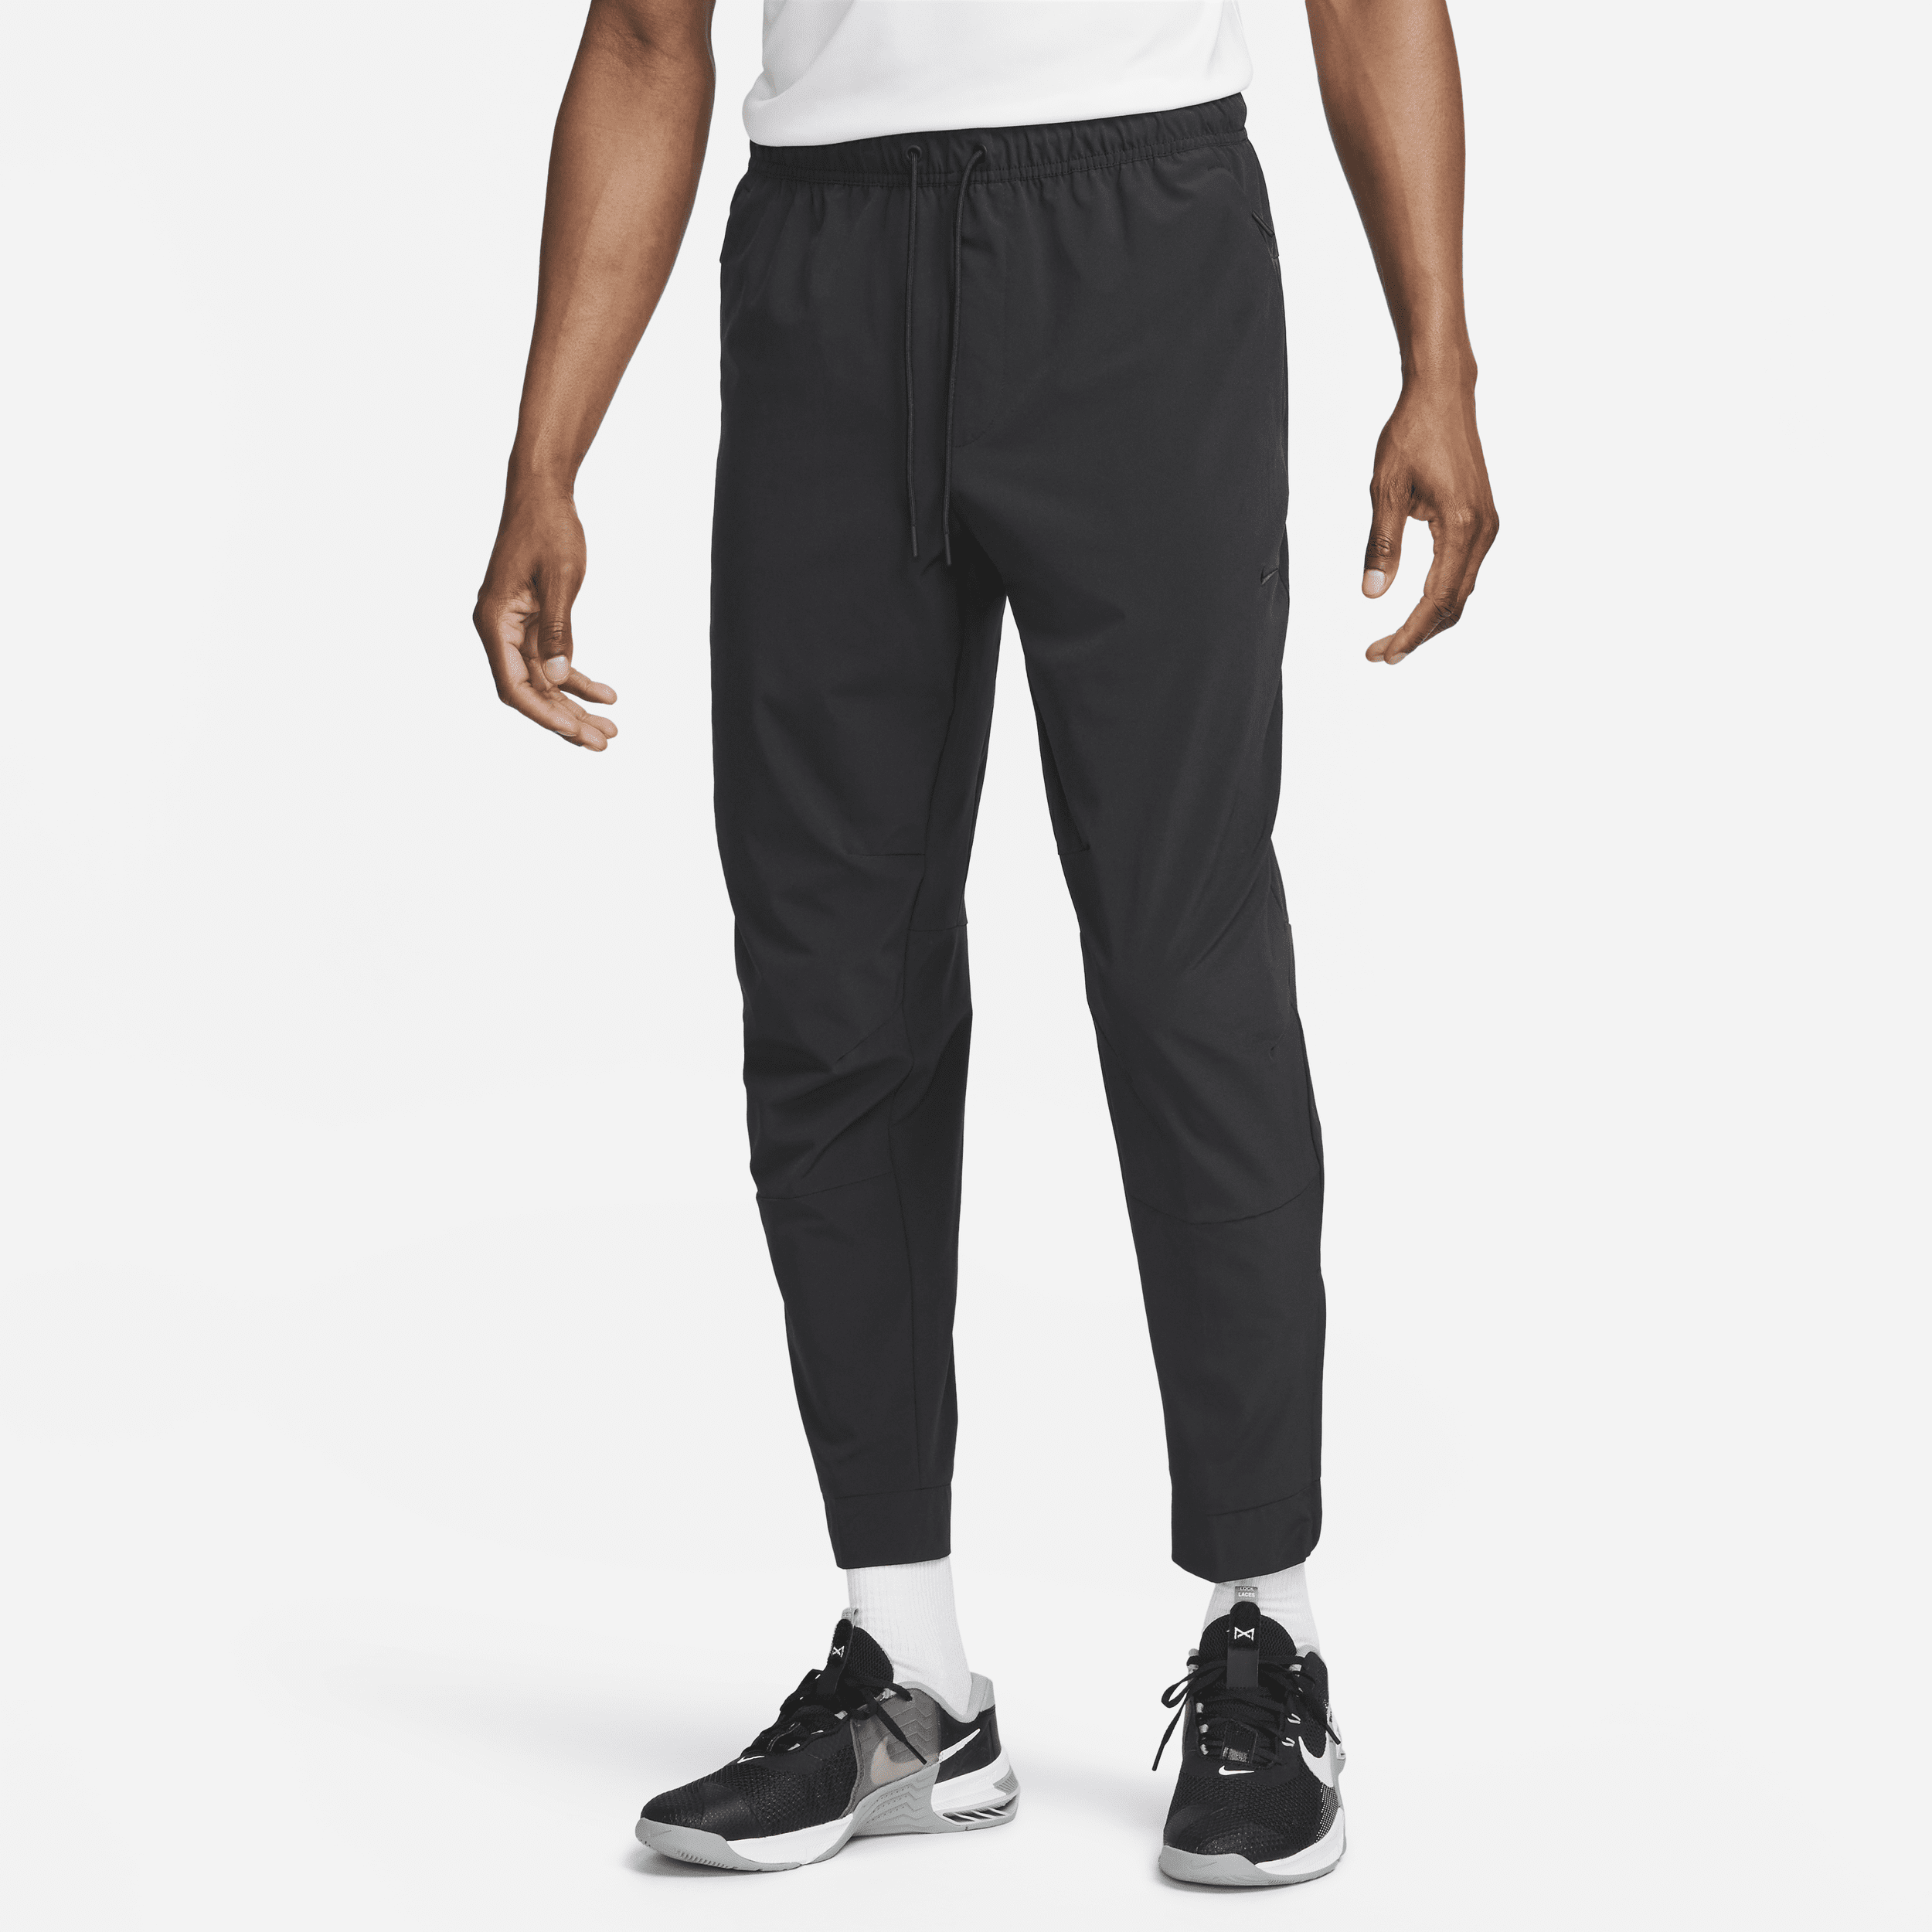 Pantaloni versatili con zip sul bordo Dri-FIT Nike Unlimited – Uomo - Nero